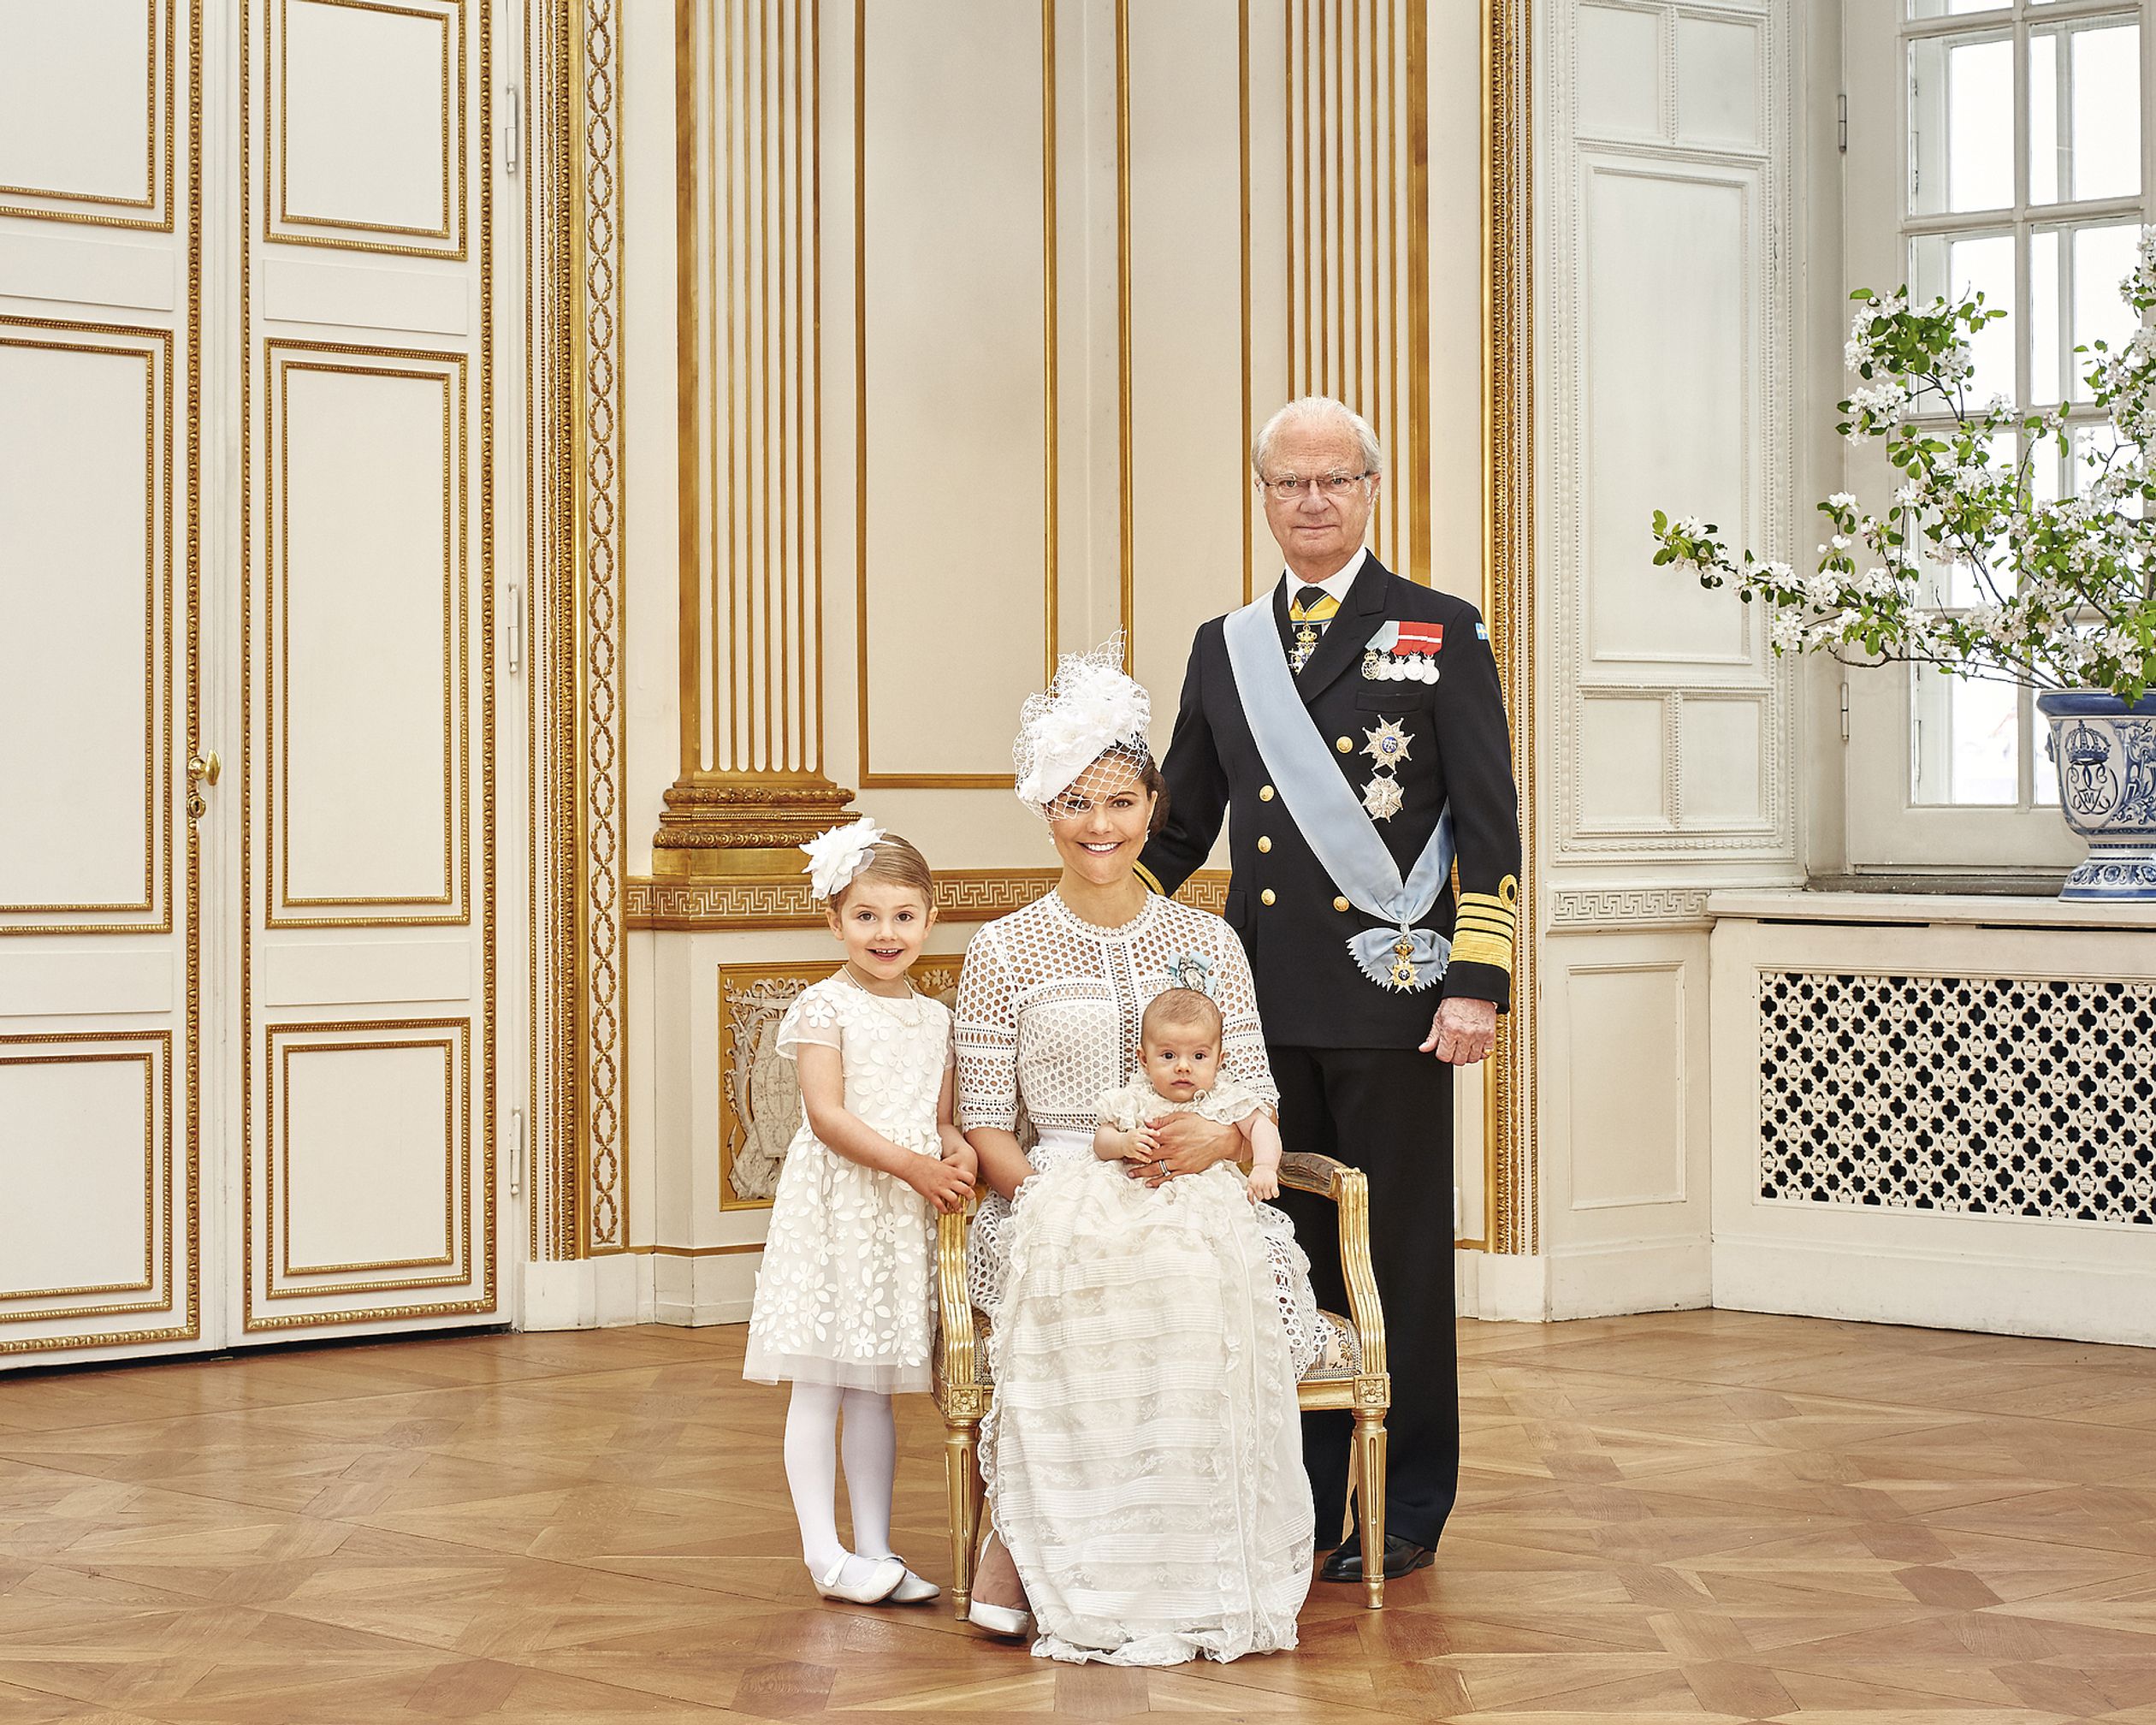 Eén van de officiële doopfoto's, gemaakt op 27 mei 2016. Koning Carl Gustaf met zijn troonopvolgers